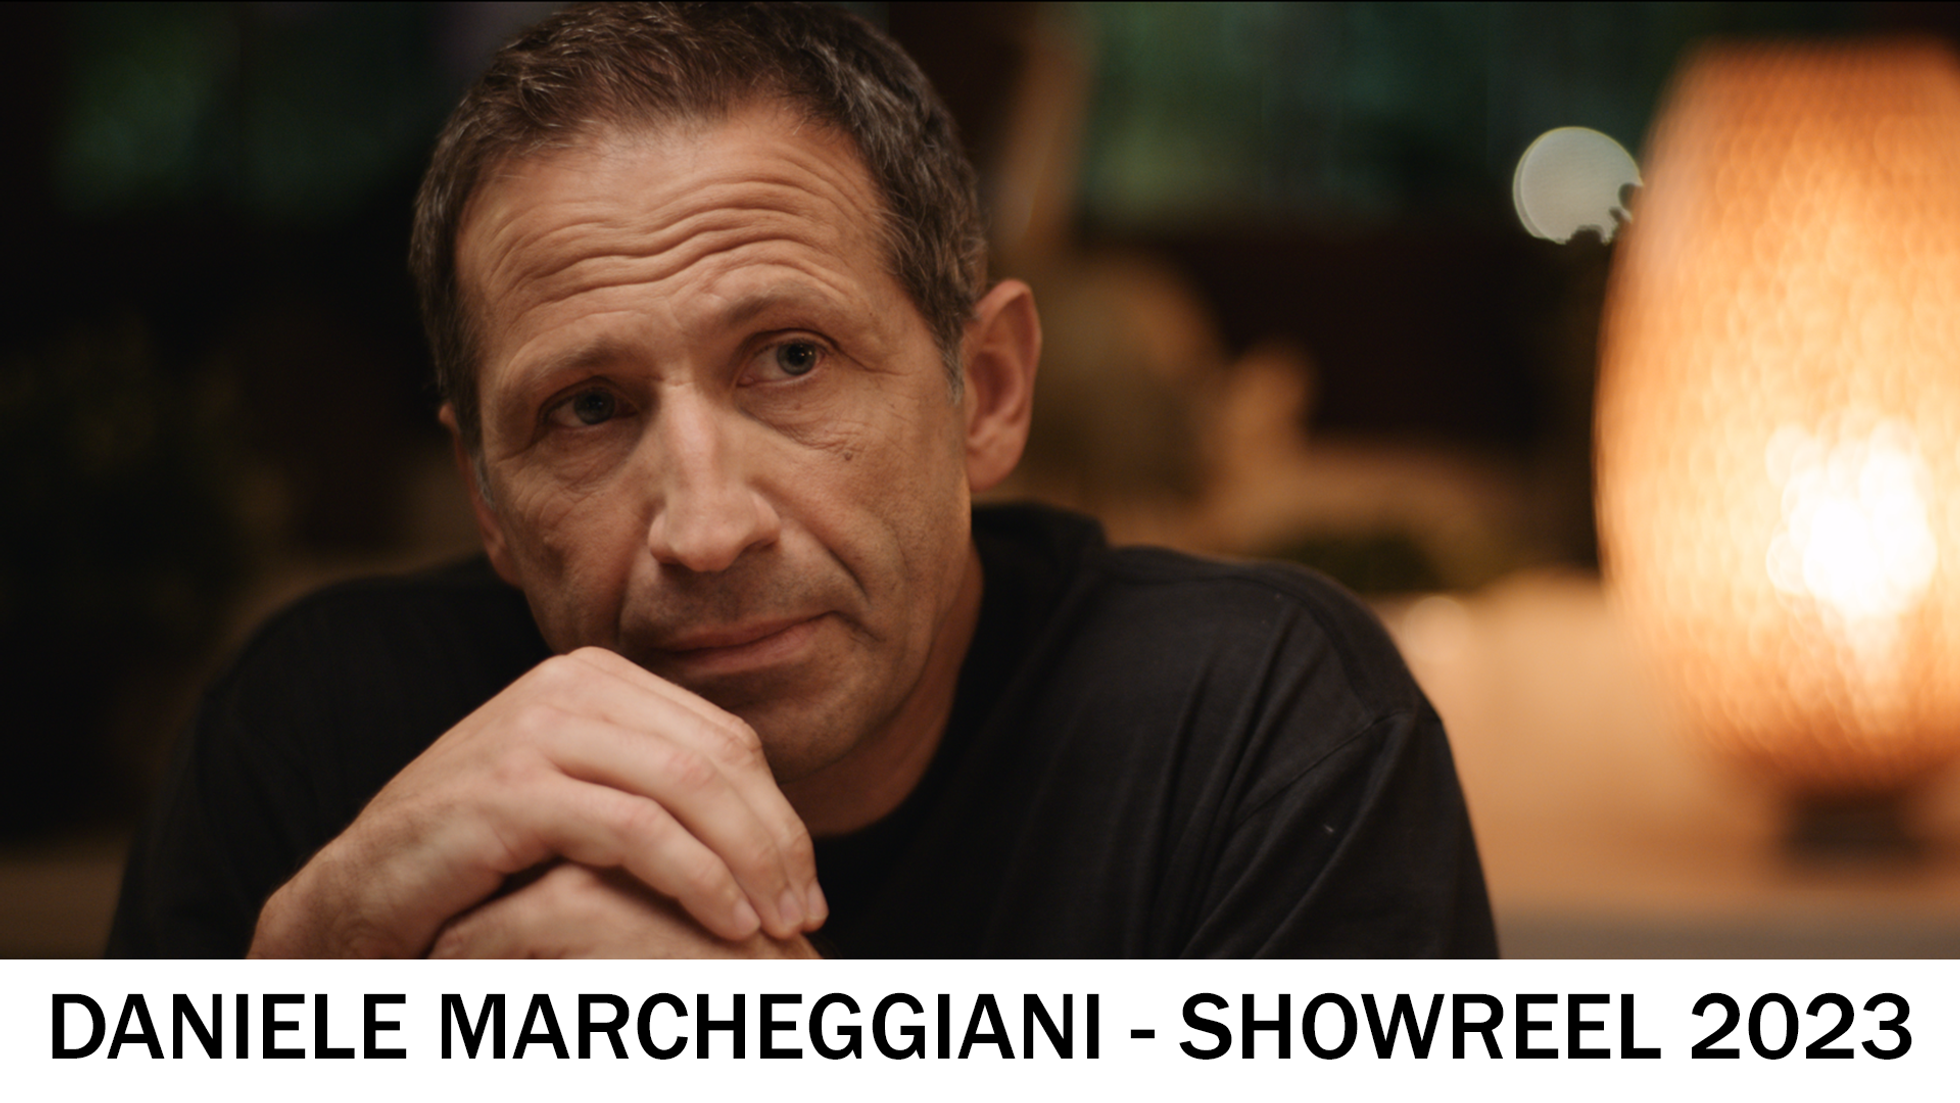 Showreel 2023 - Daniele Marcheggiani